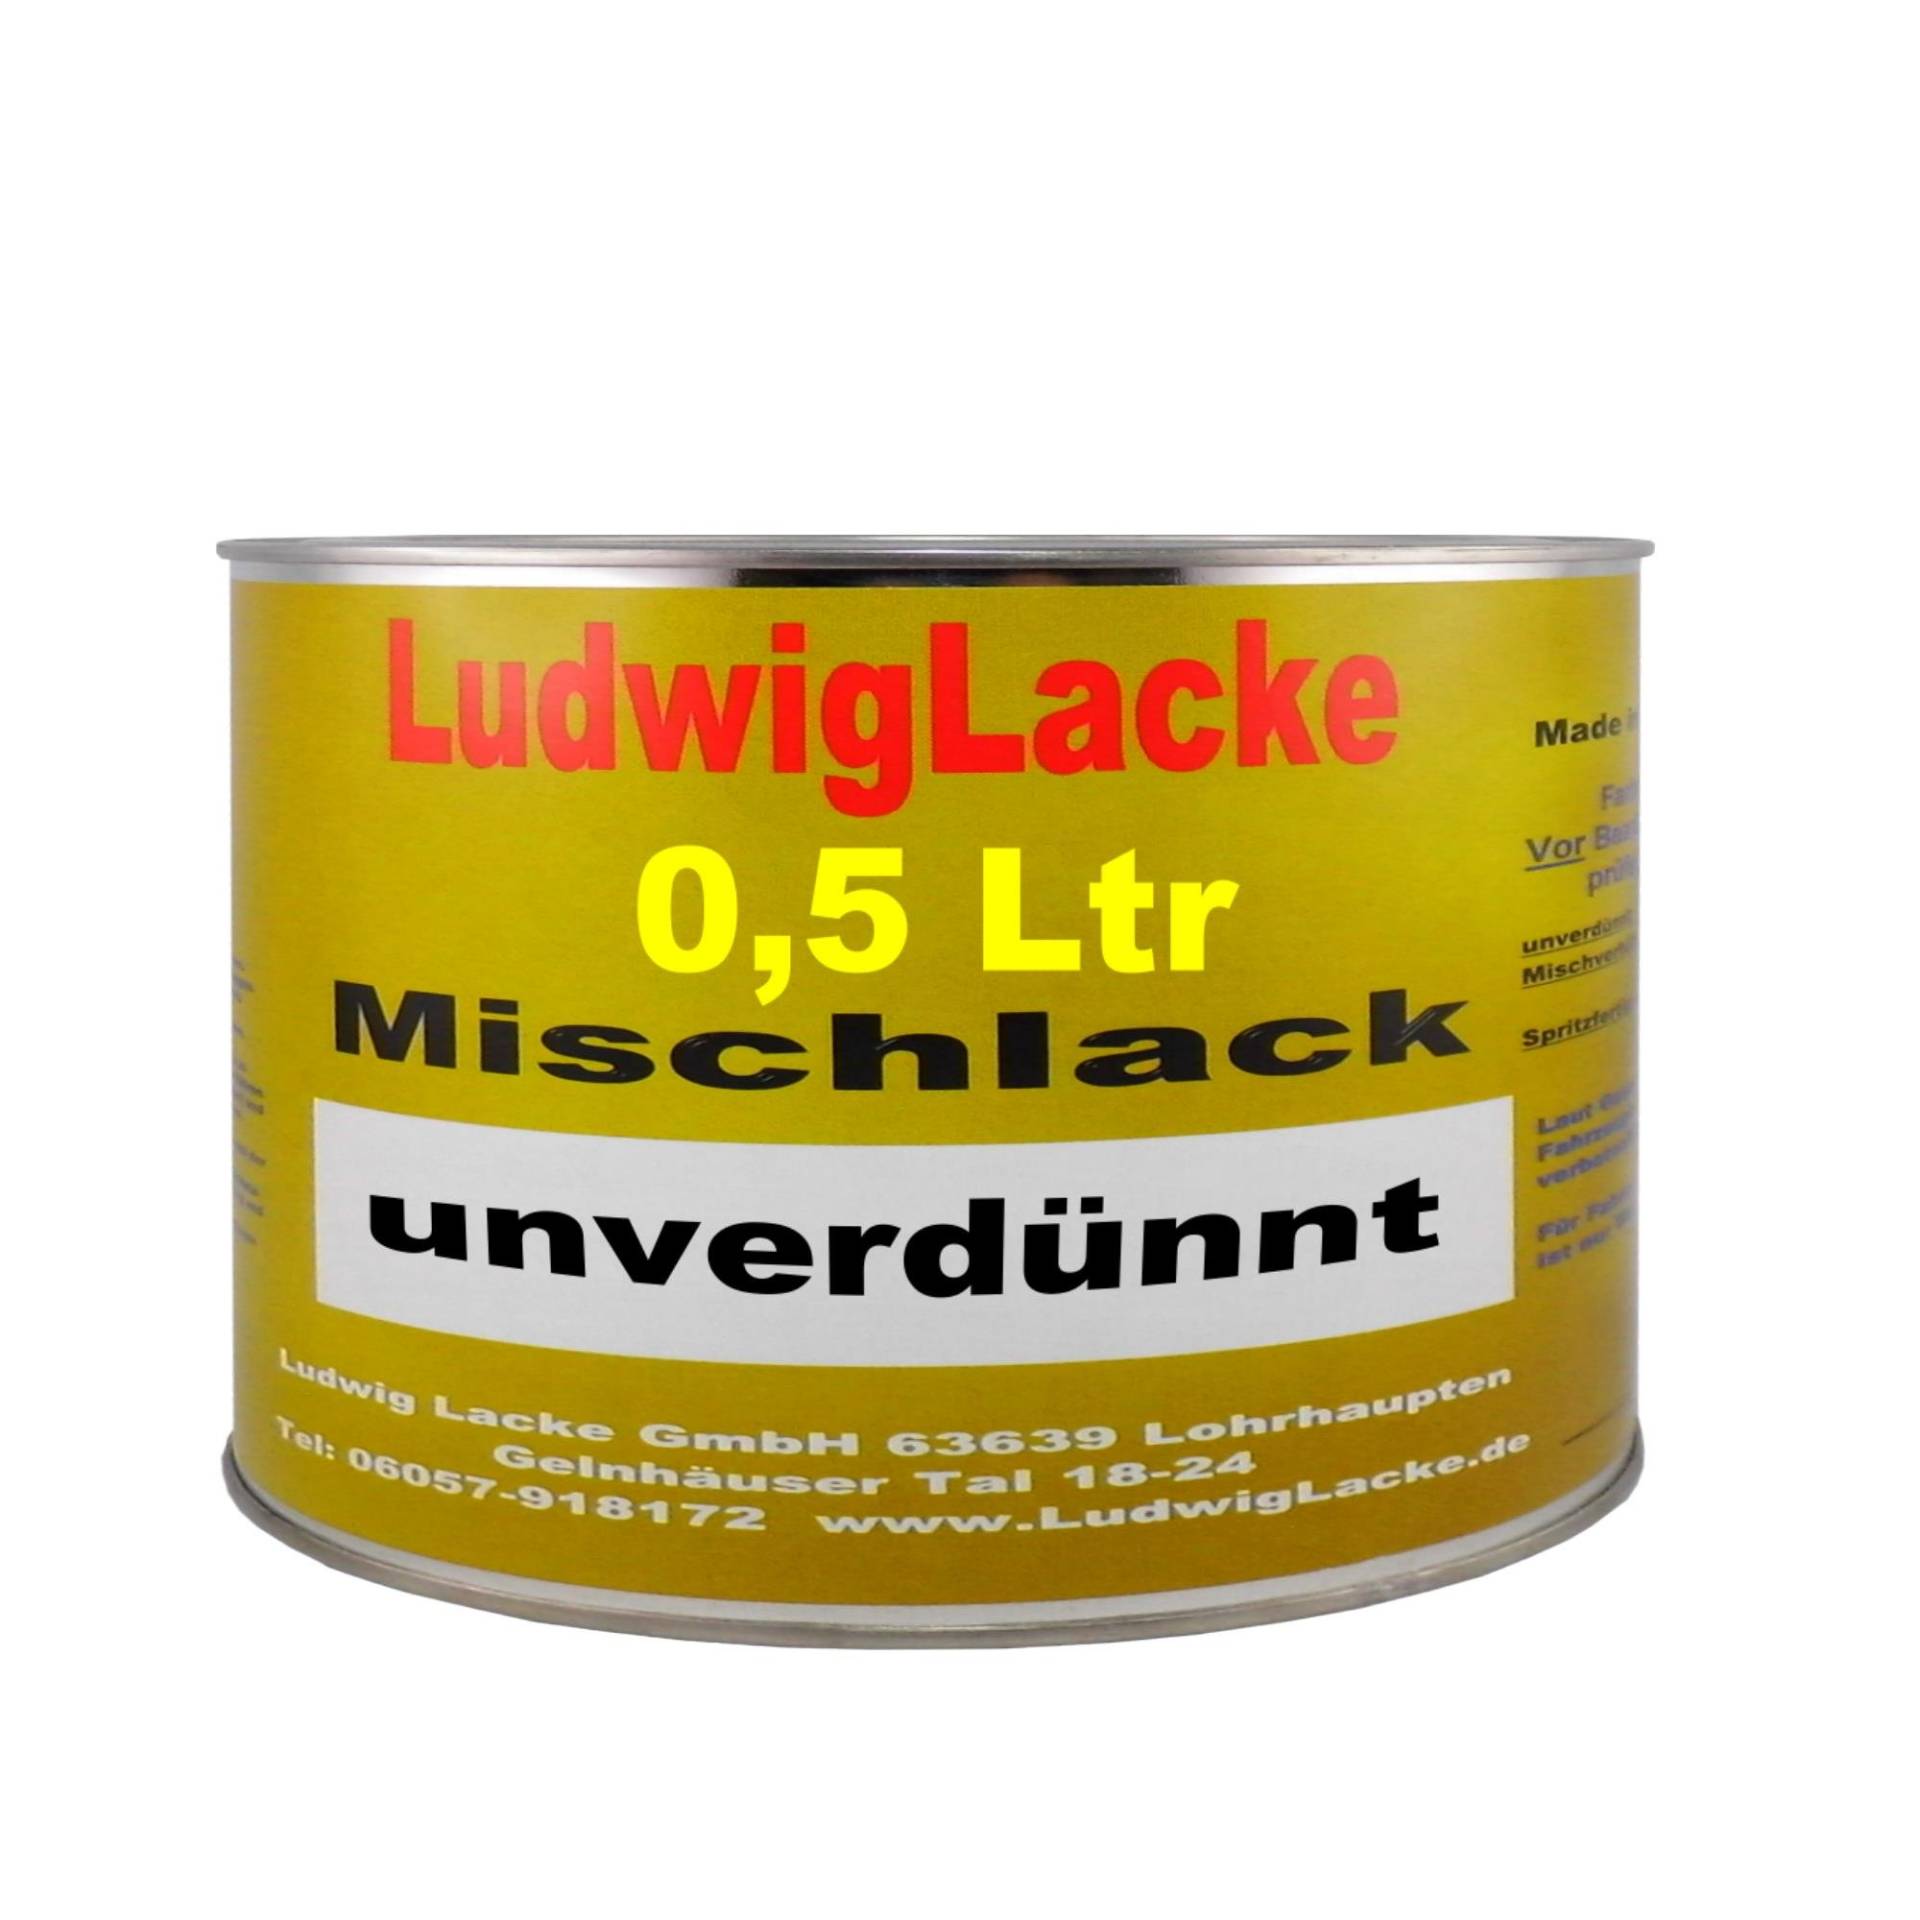 Ludwig Lacke 500 ml unverdünnter Autolack für VW Indienblau 91 LL5M Bj.90-12 von Ludwig Lacke